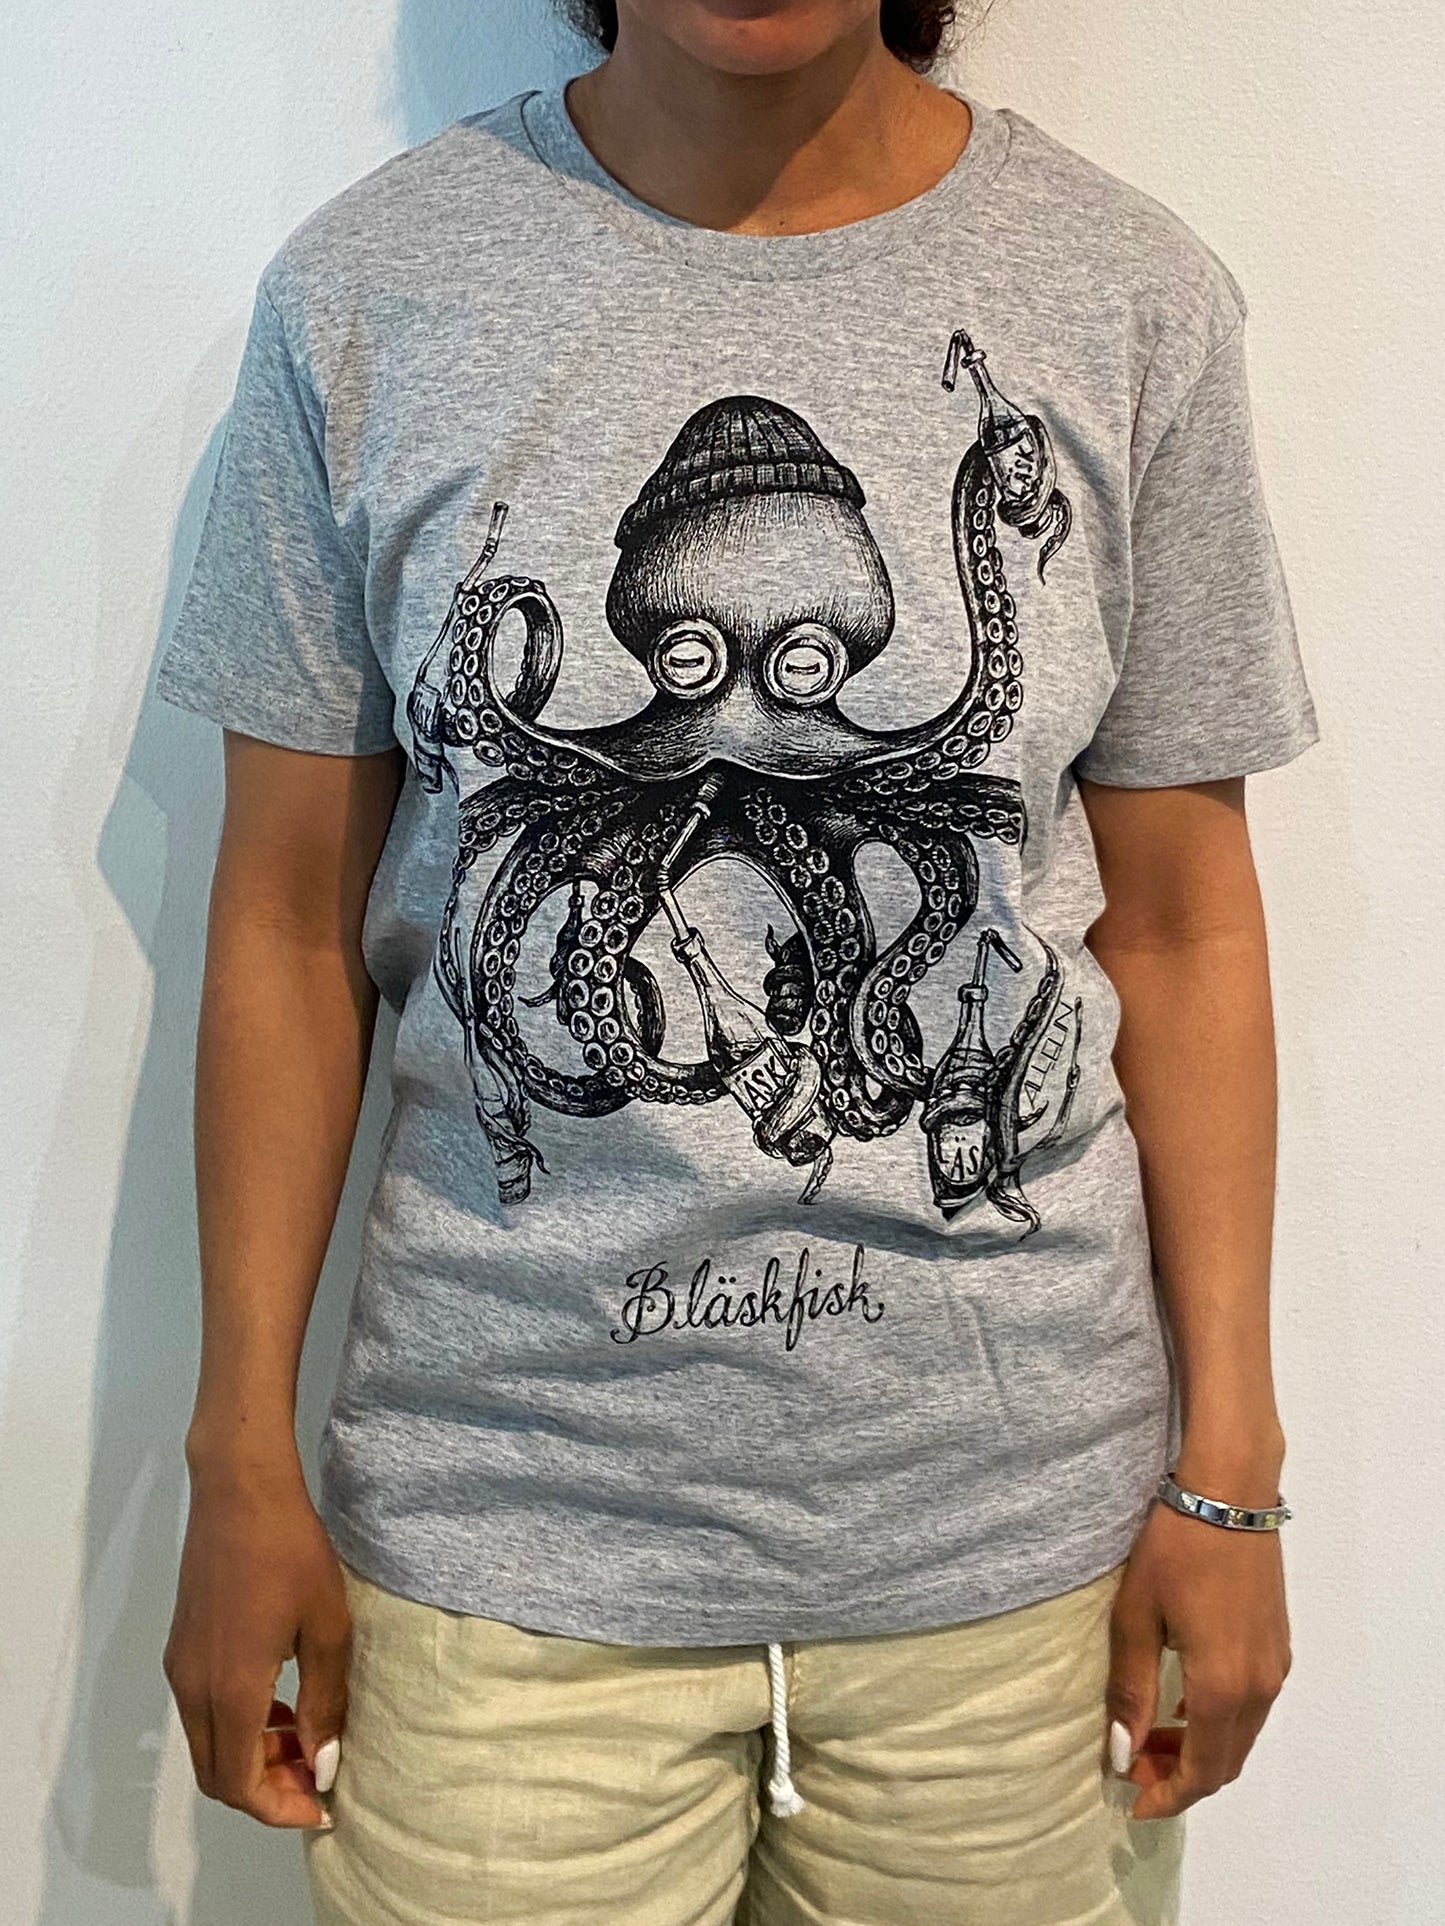 T-shirt: Bläskfisk